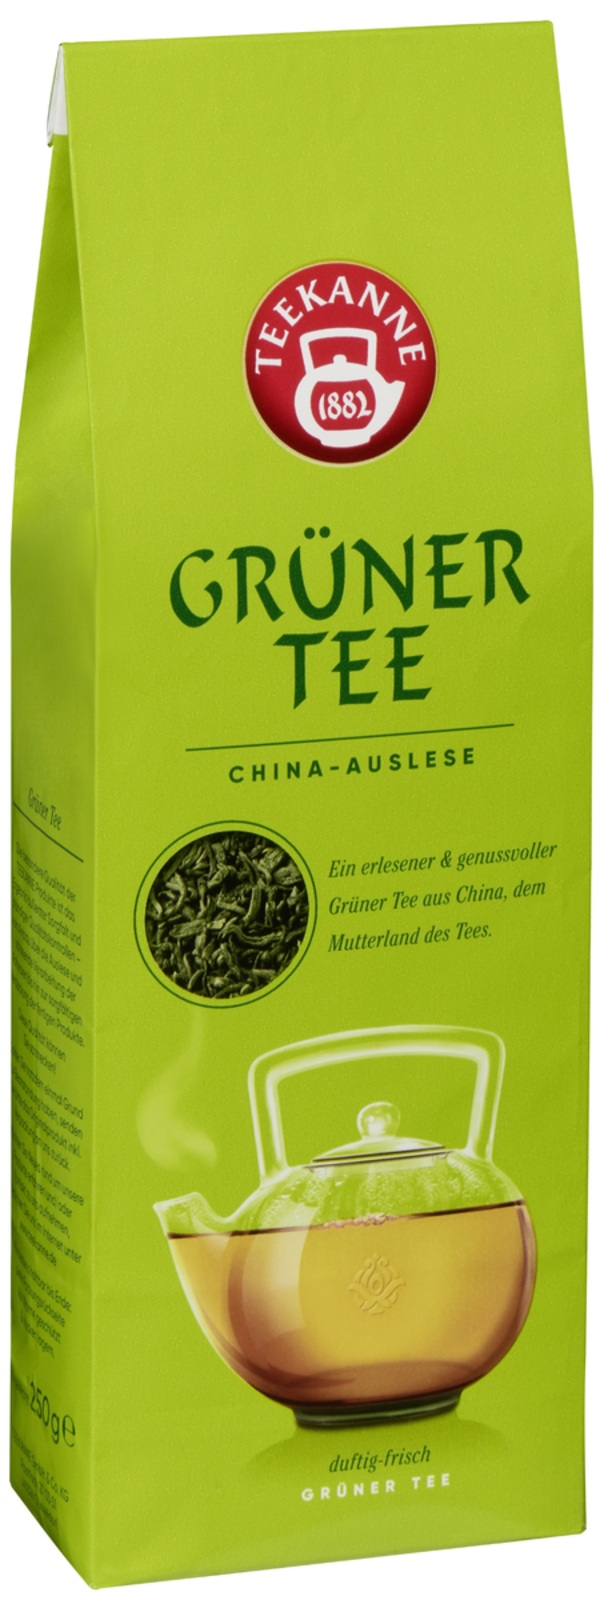 Bild 1 von Teekanne Grüner Tee China Auslese lose 250 g